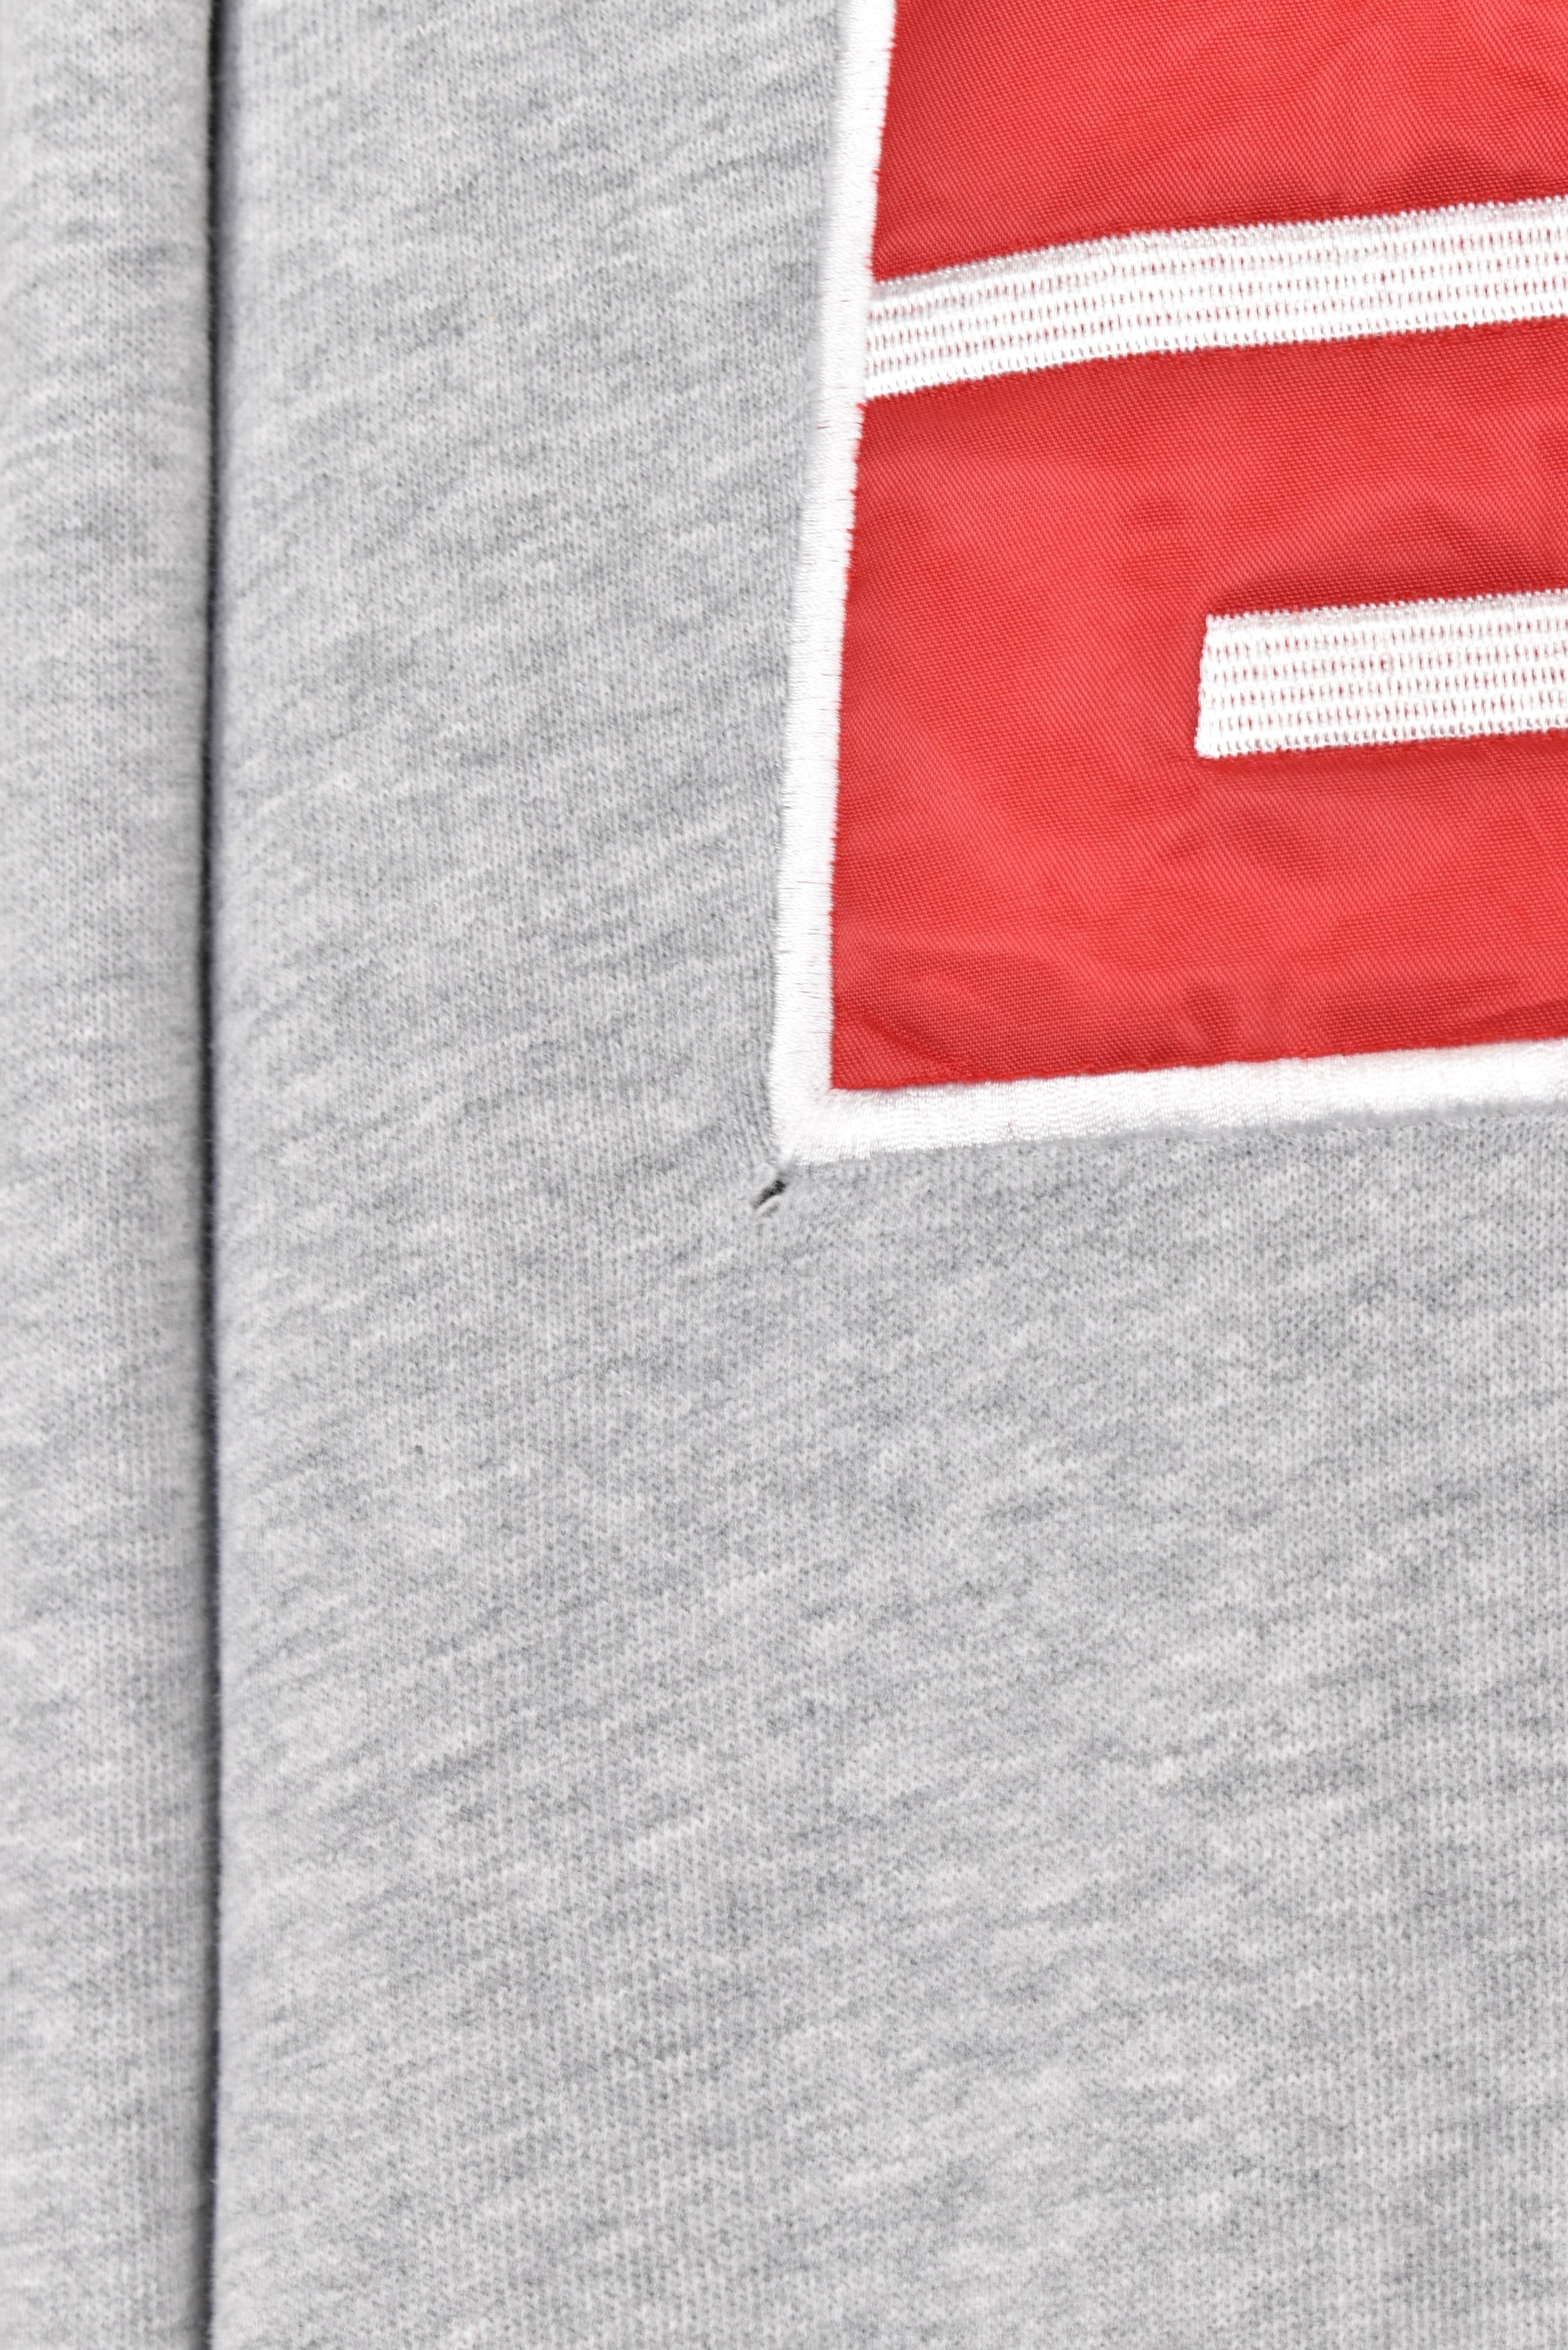 Vintage ESPN hoodie, grey embroidered sweatshirt - AU XL OTHER